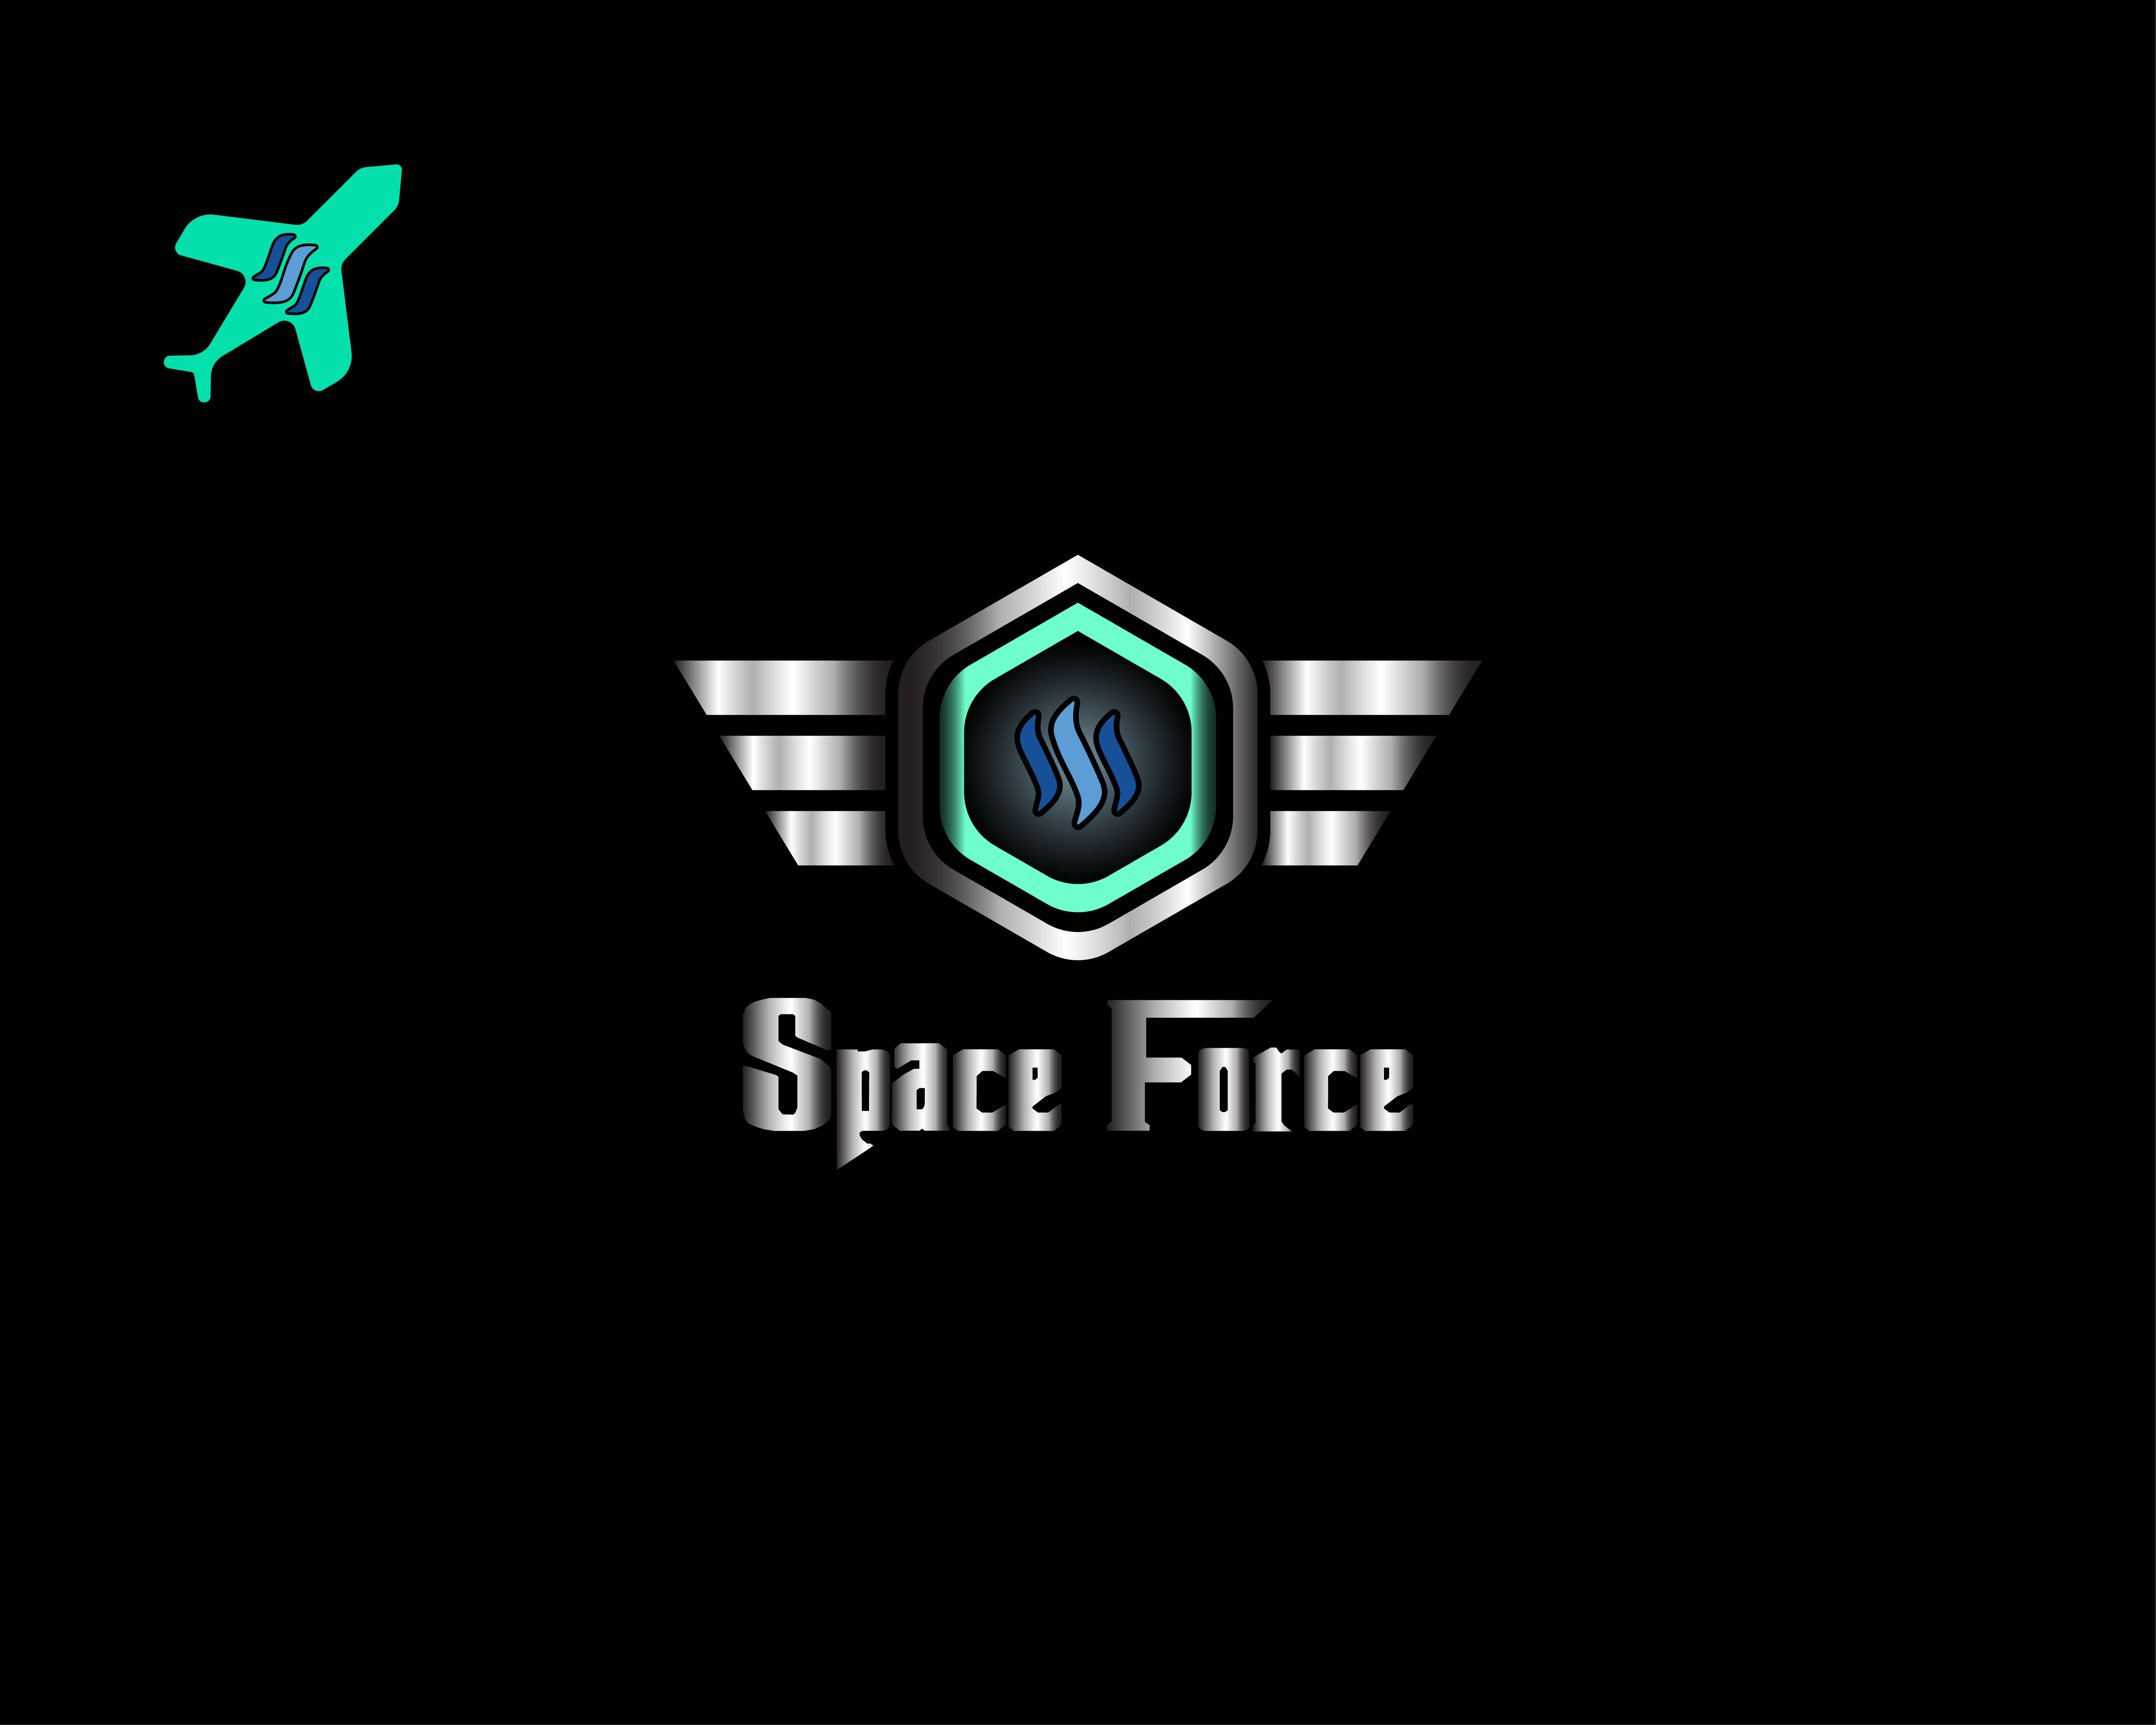 spase force-01.jpg